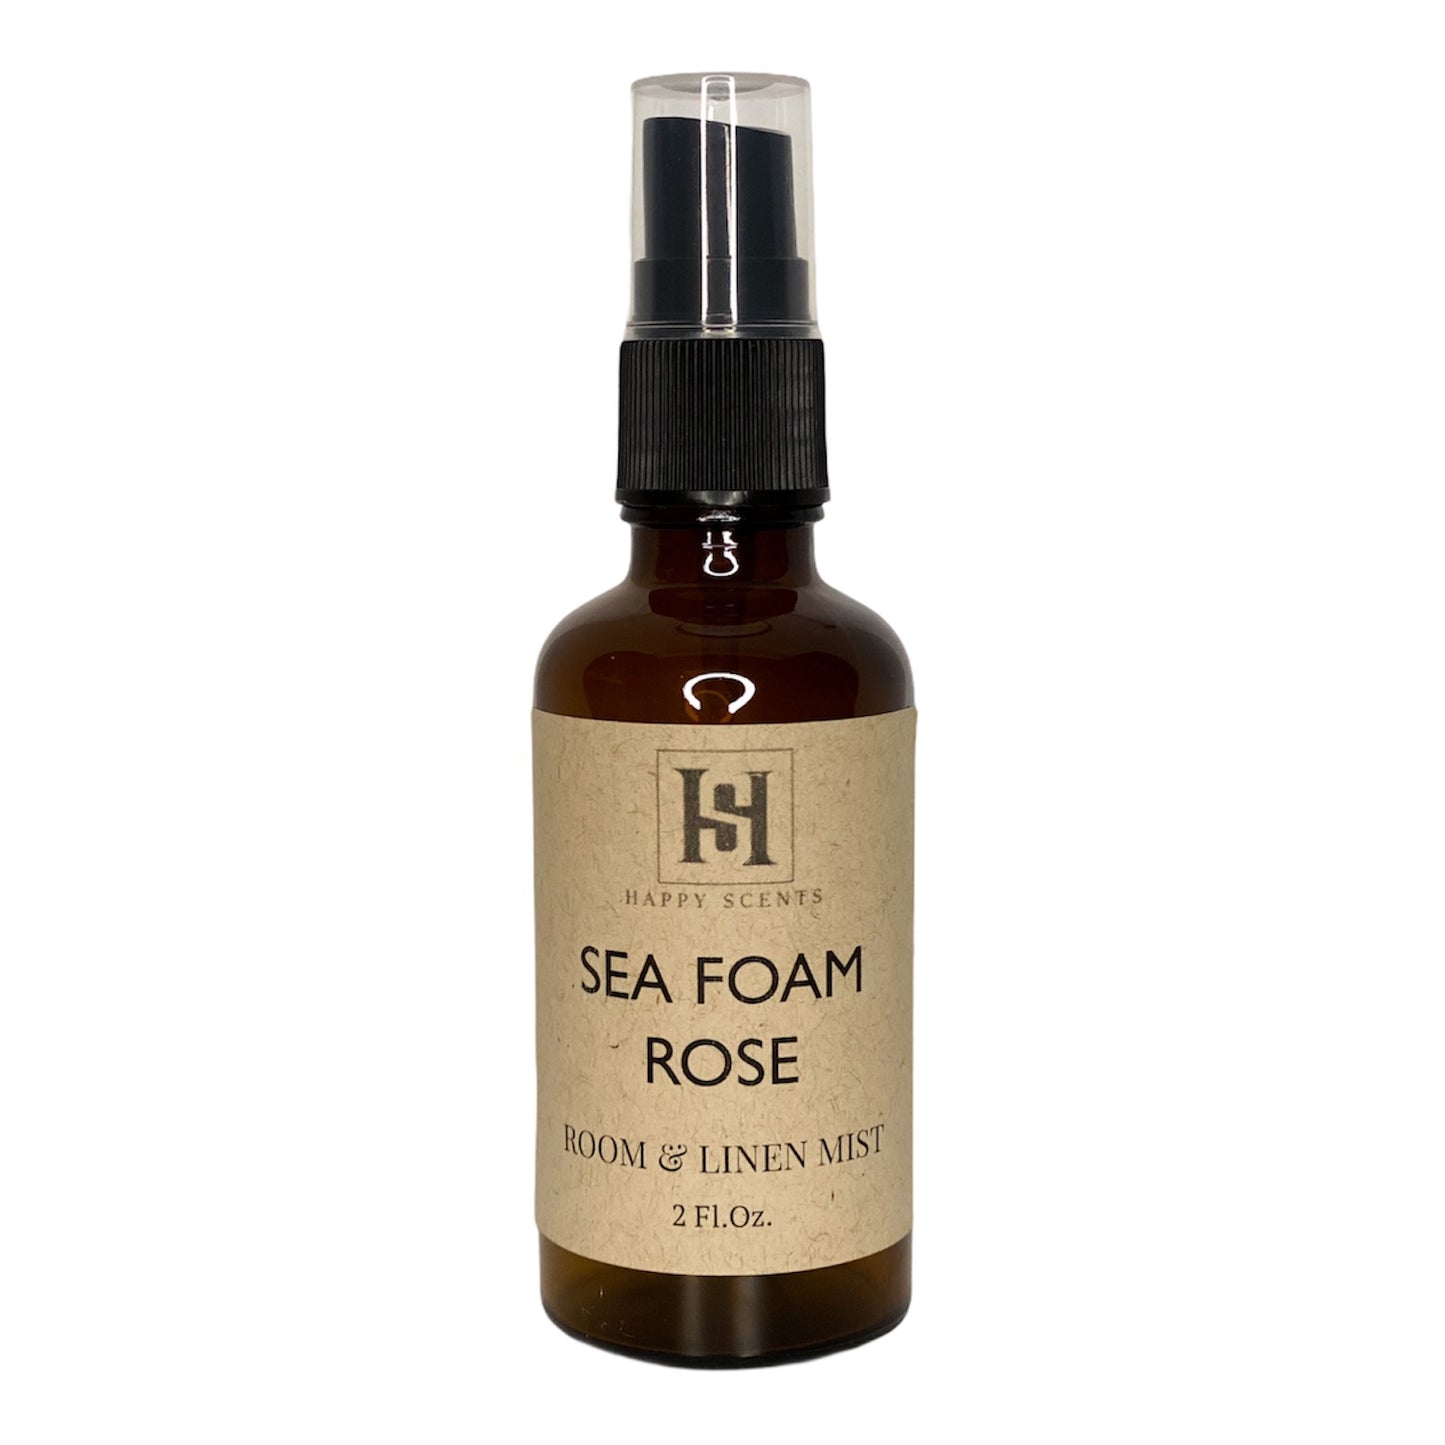 Sea Foam Rose Room & Linen Mist